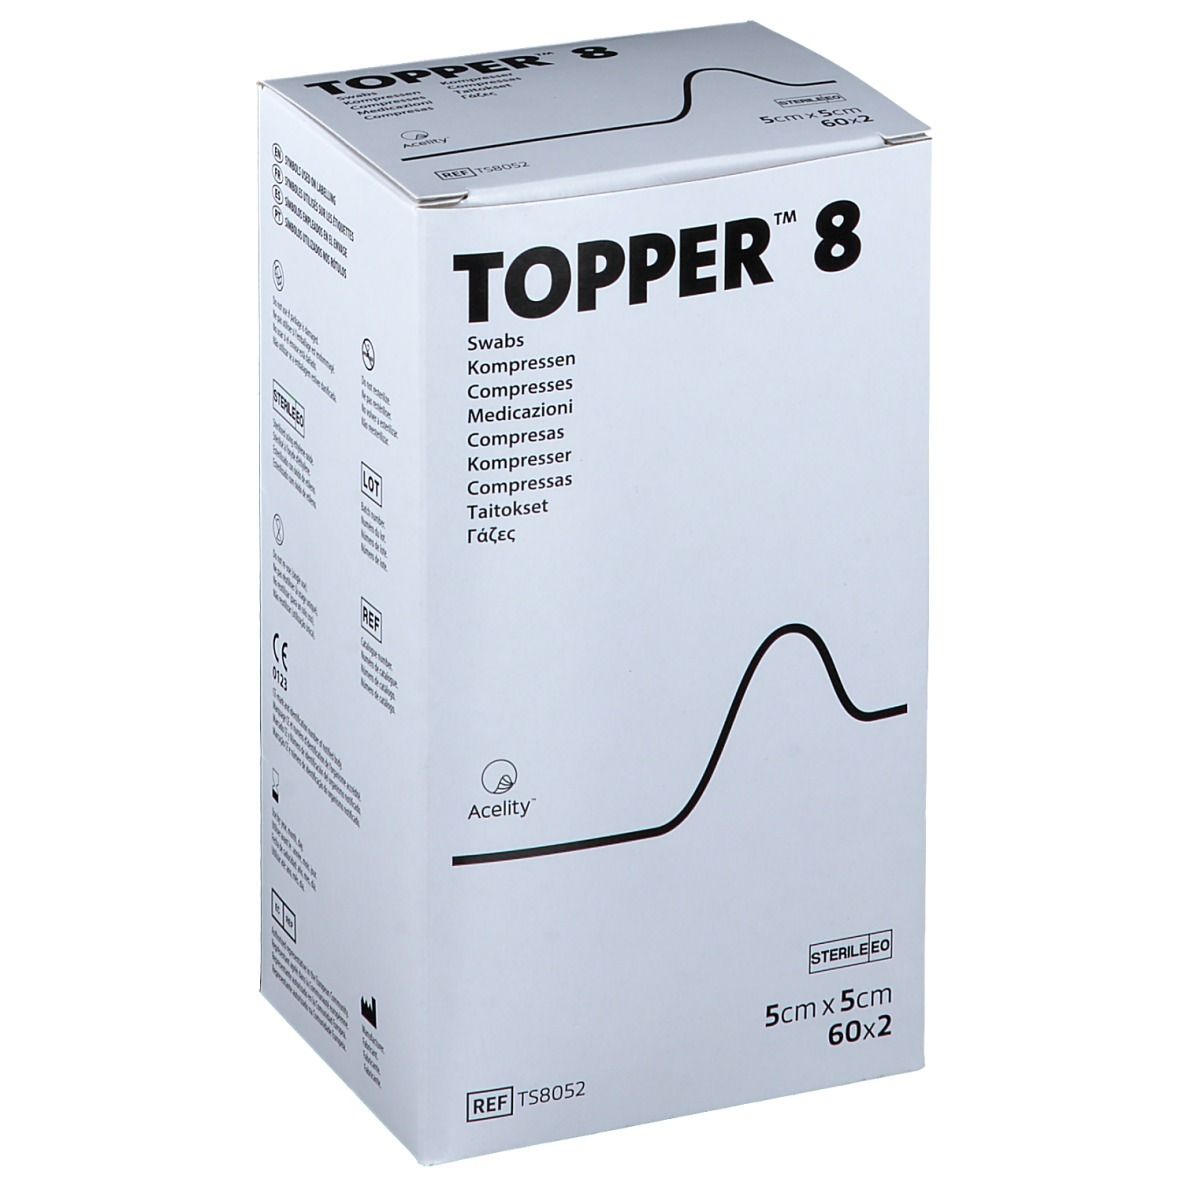 TOPPER® 8 Kompressen steril 5 cm x 5 cm